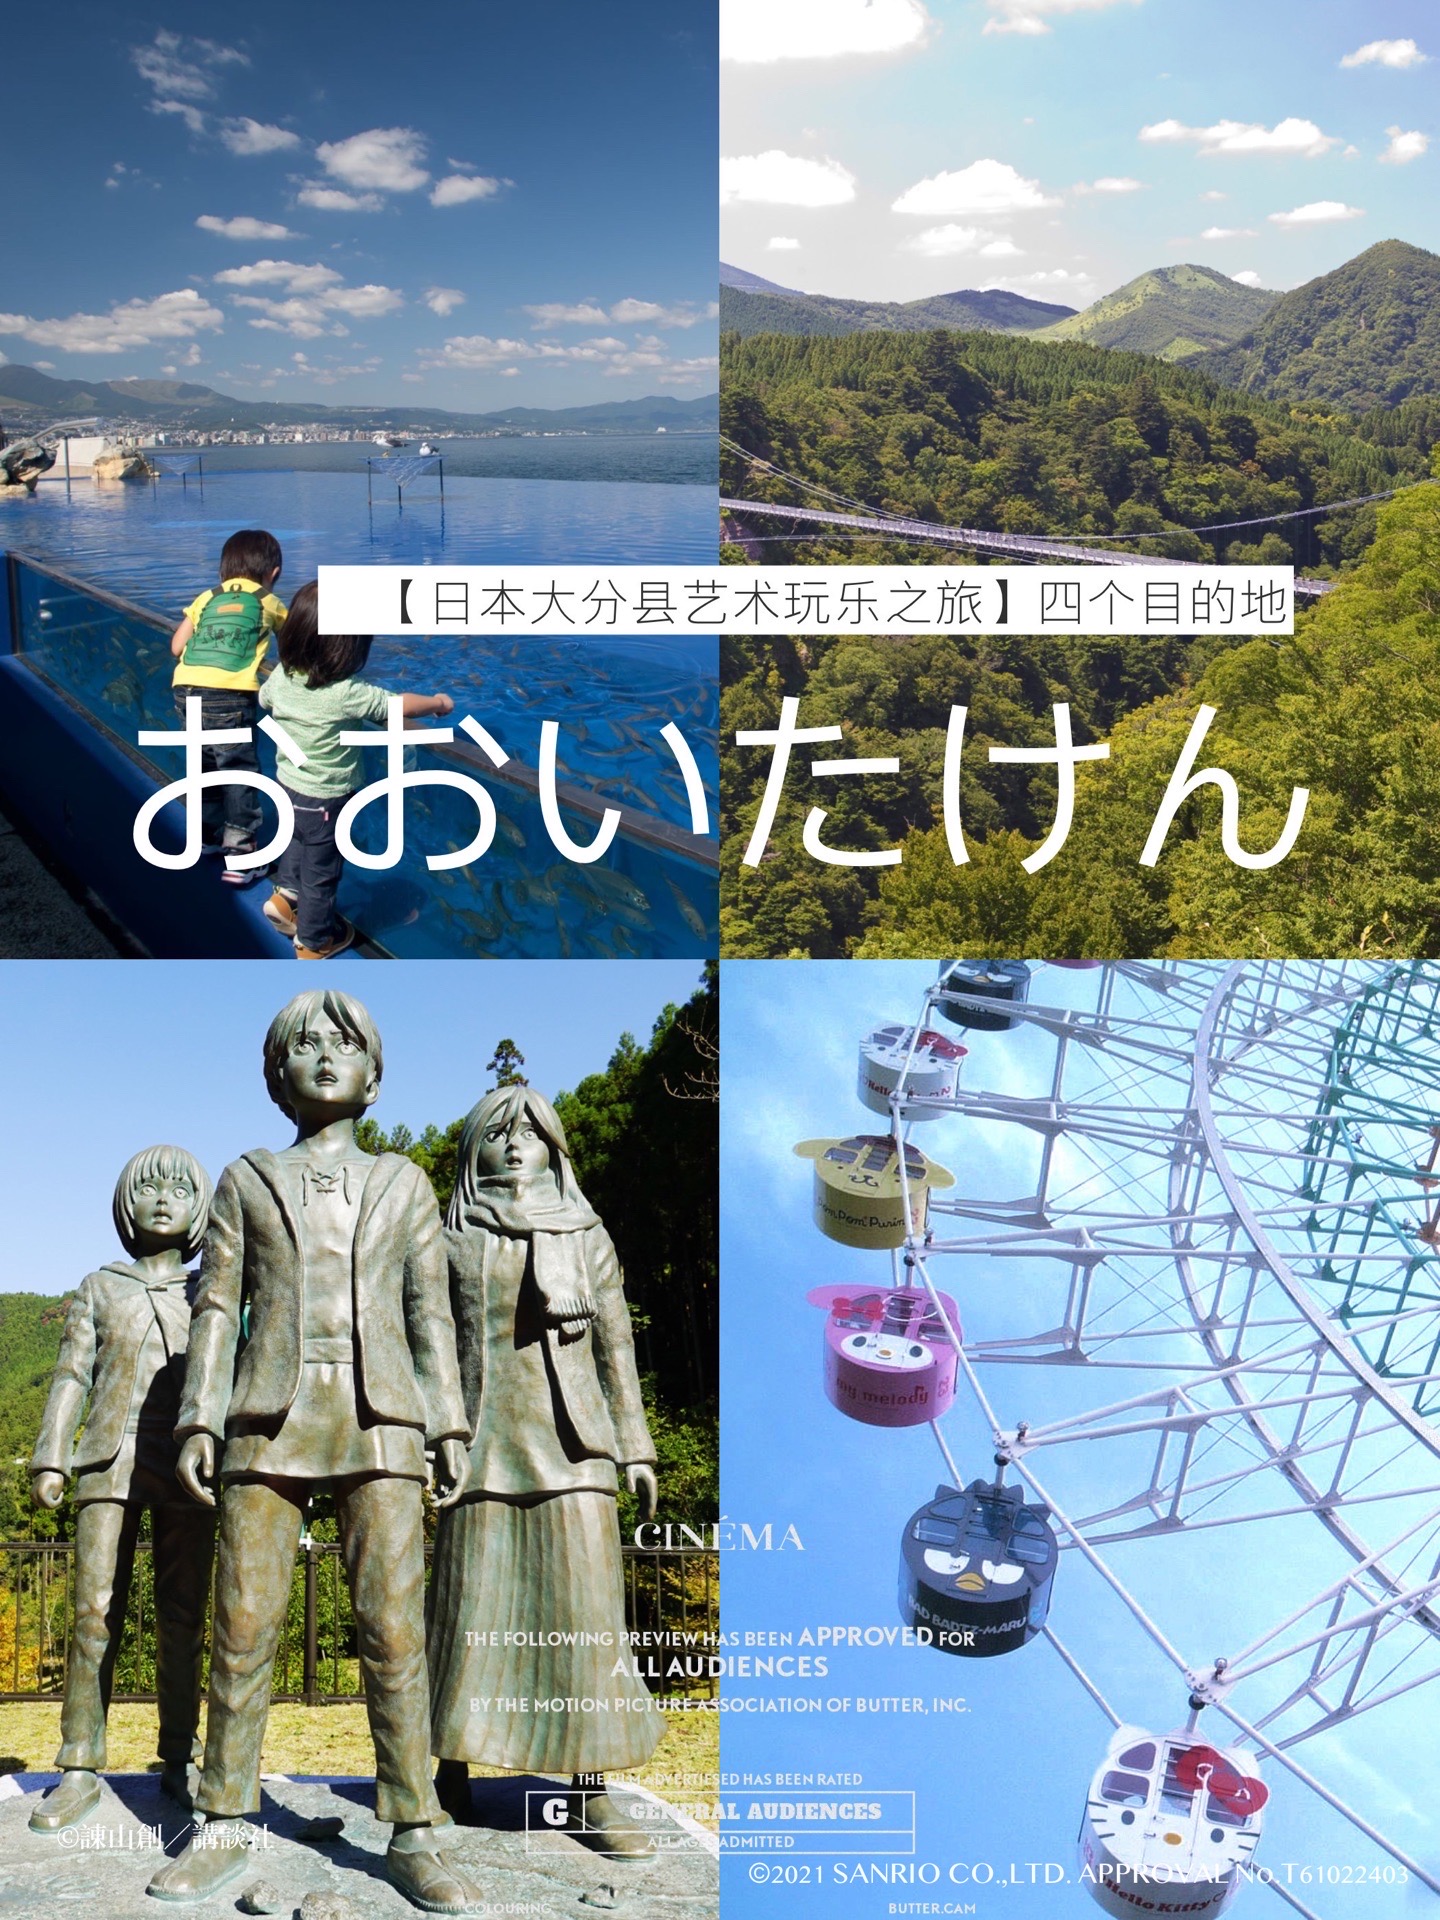 日本大分艺术之旅 | 亲子旅行4处目的地